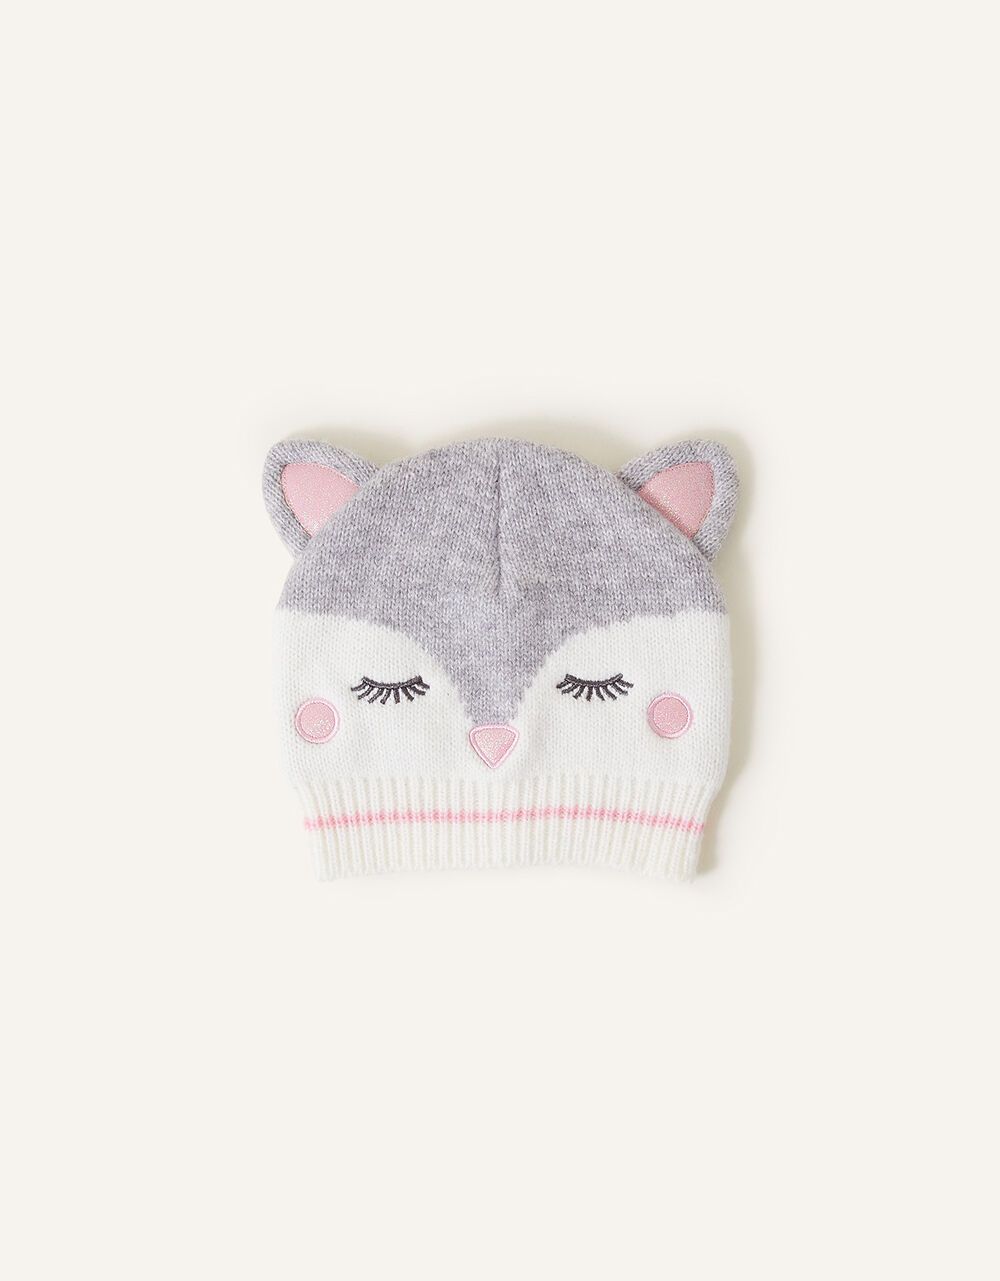 Snow Fox Beanie Hat Grey | Accessorize (Global)